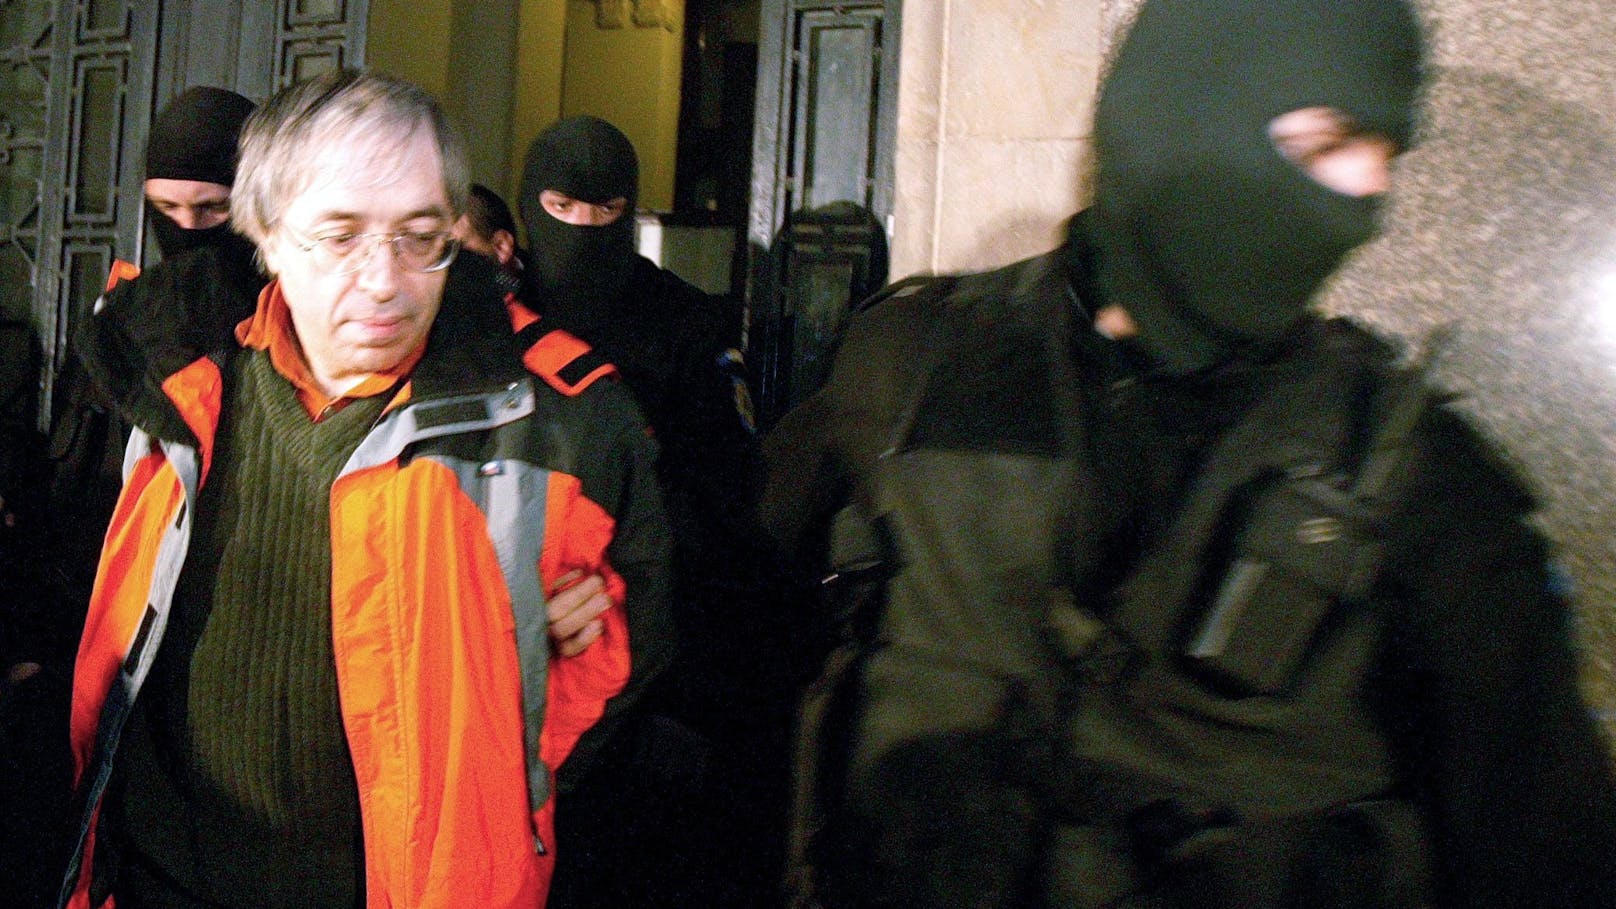 Gregorian Bivolaru auf einer Aufnahme von 2004: Der Sex-Guru wurde nun erneut festgenommen.